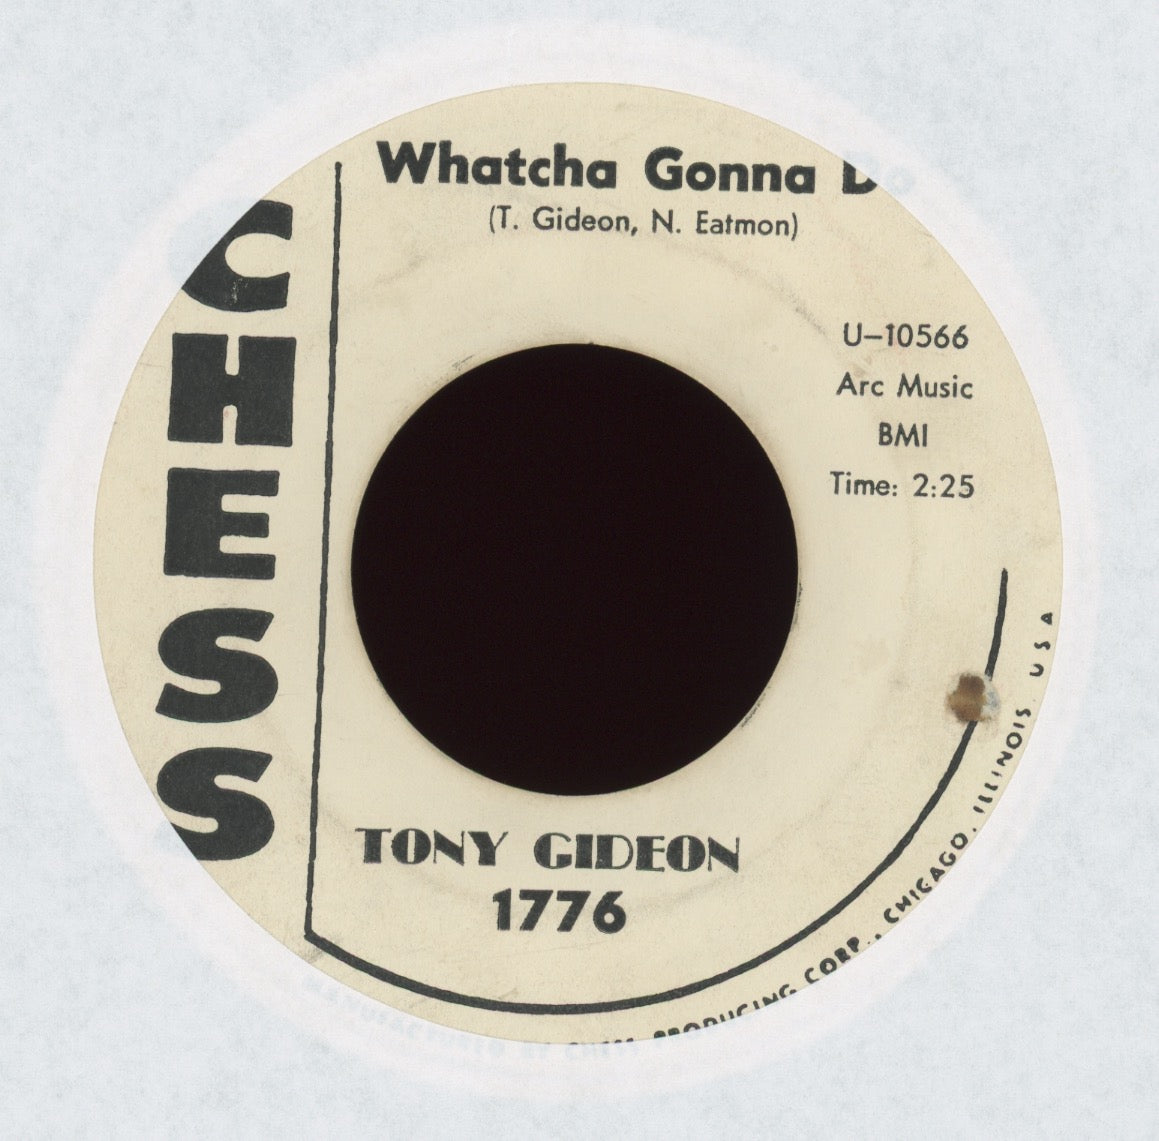 Tony Gideon - Whatcha You Gonna Do on Chess Promo